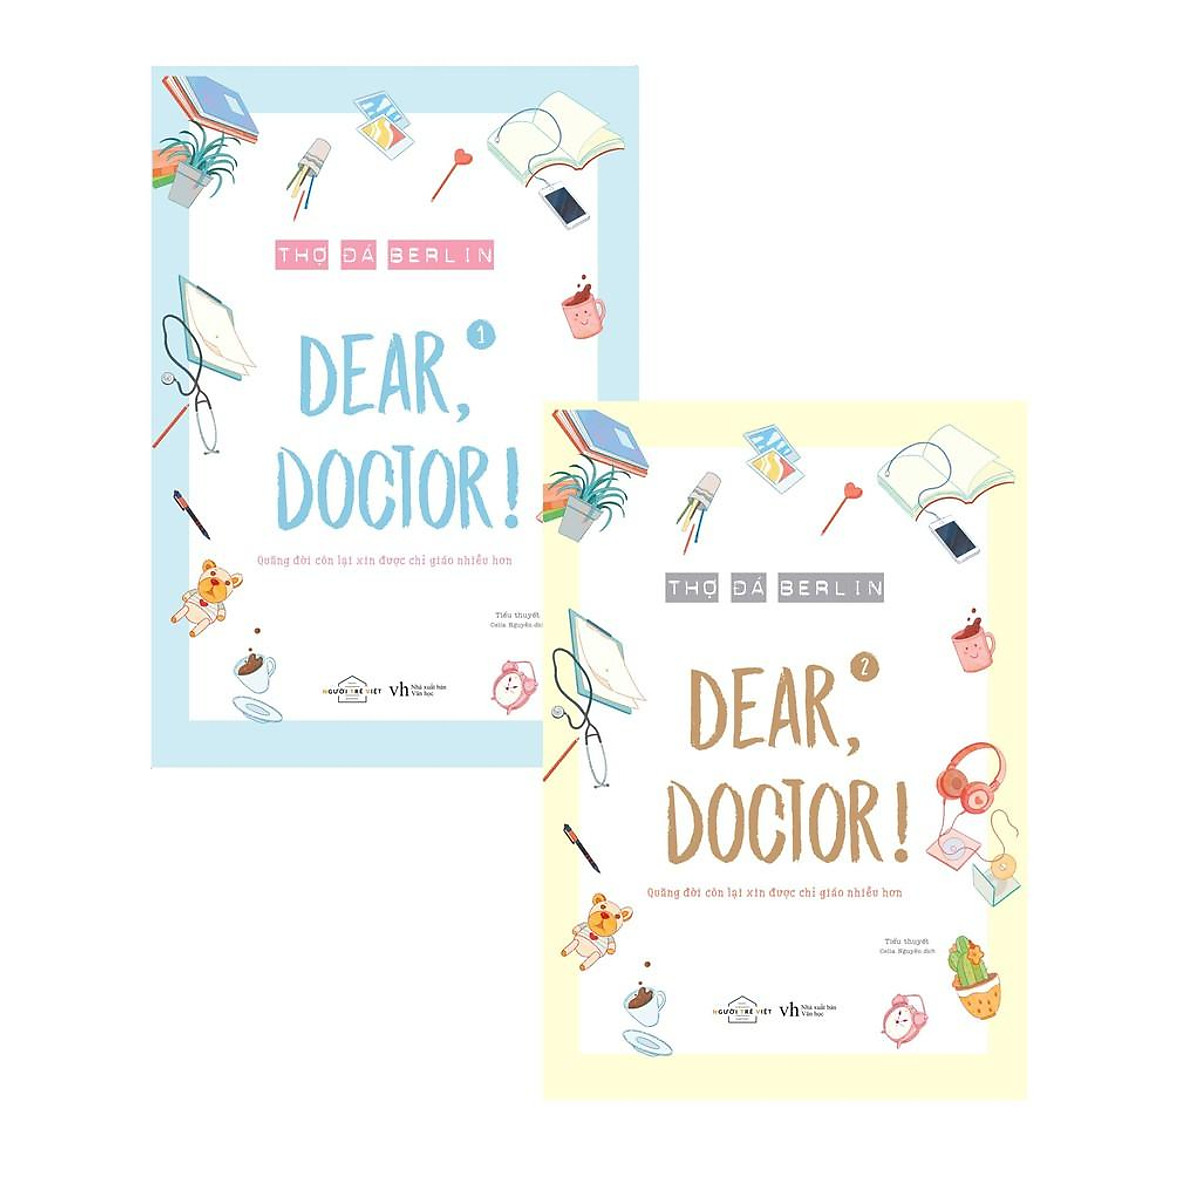 Sách - Dear, doctor ( Quãng đời còn lại xin được chỉ giáo nhiều hơn ) ( tặng kèm bookmark thiết kế )